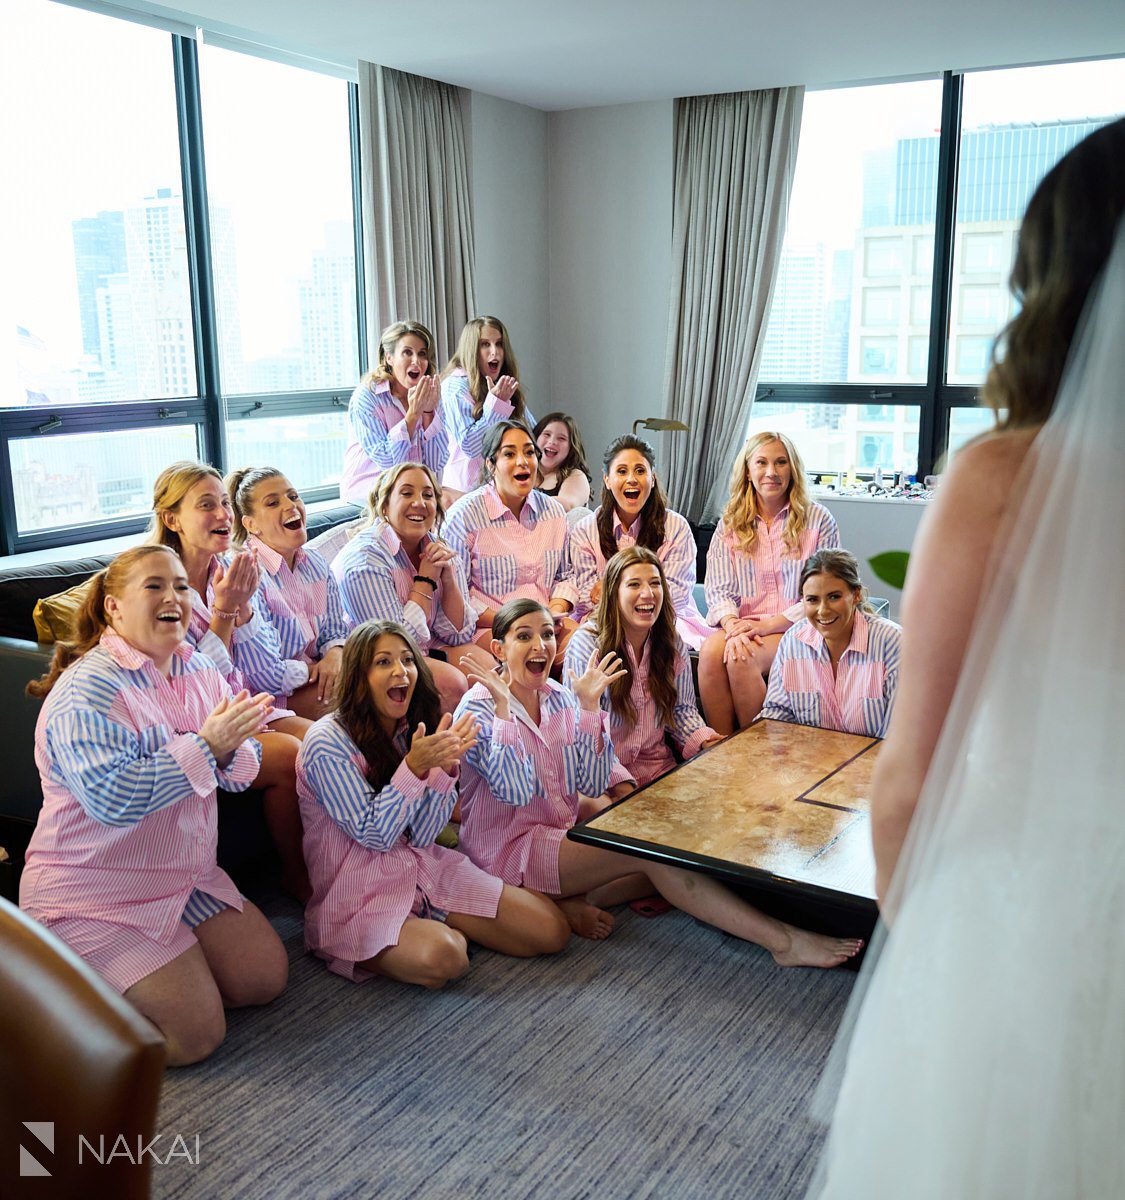 chicago ritz carlton wedding photos reveal